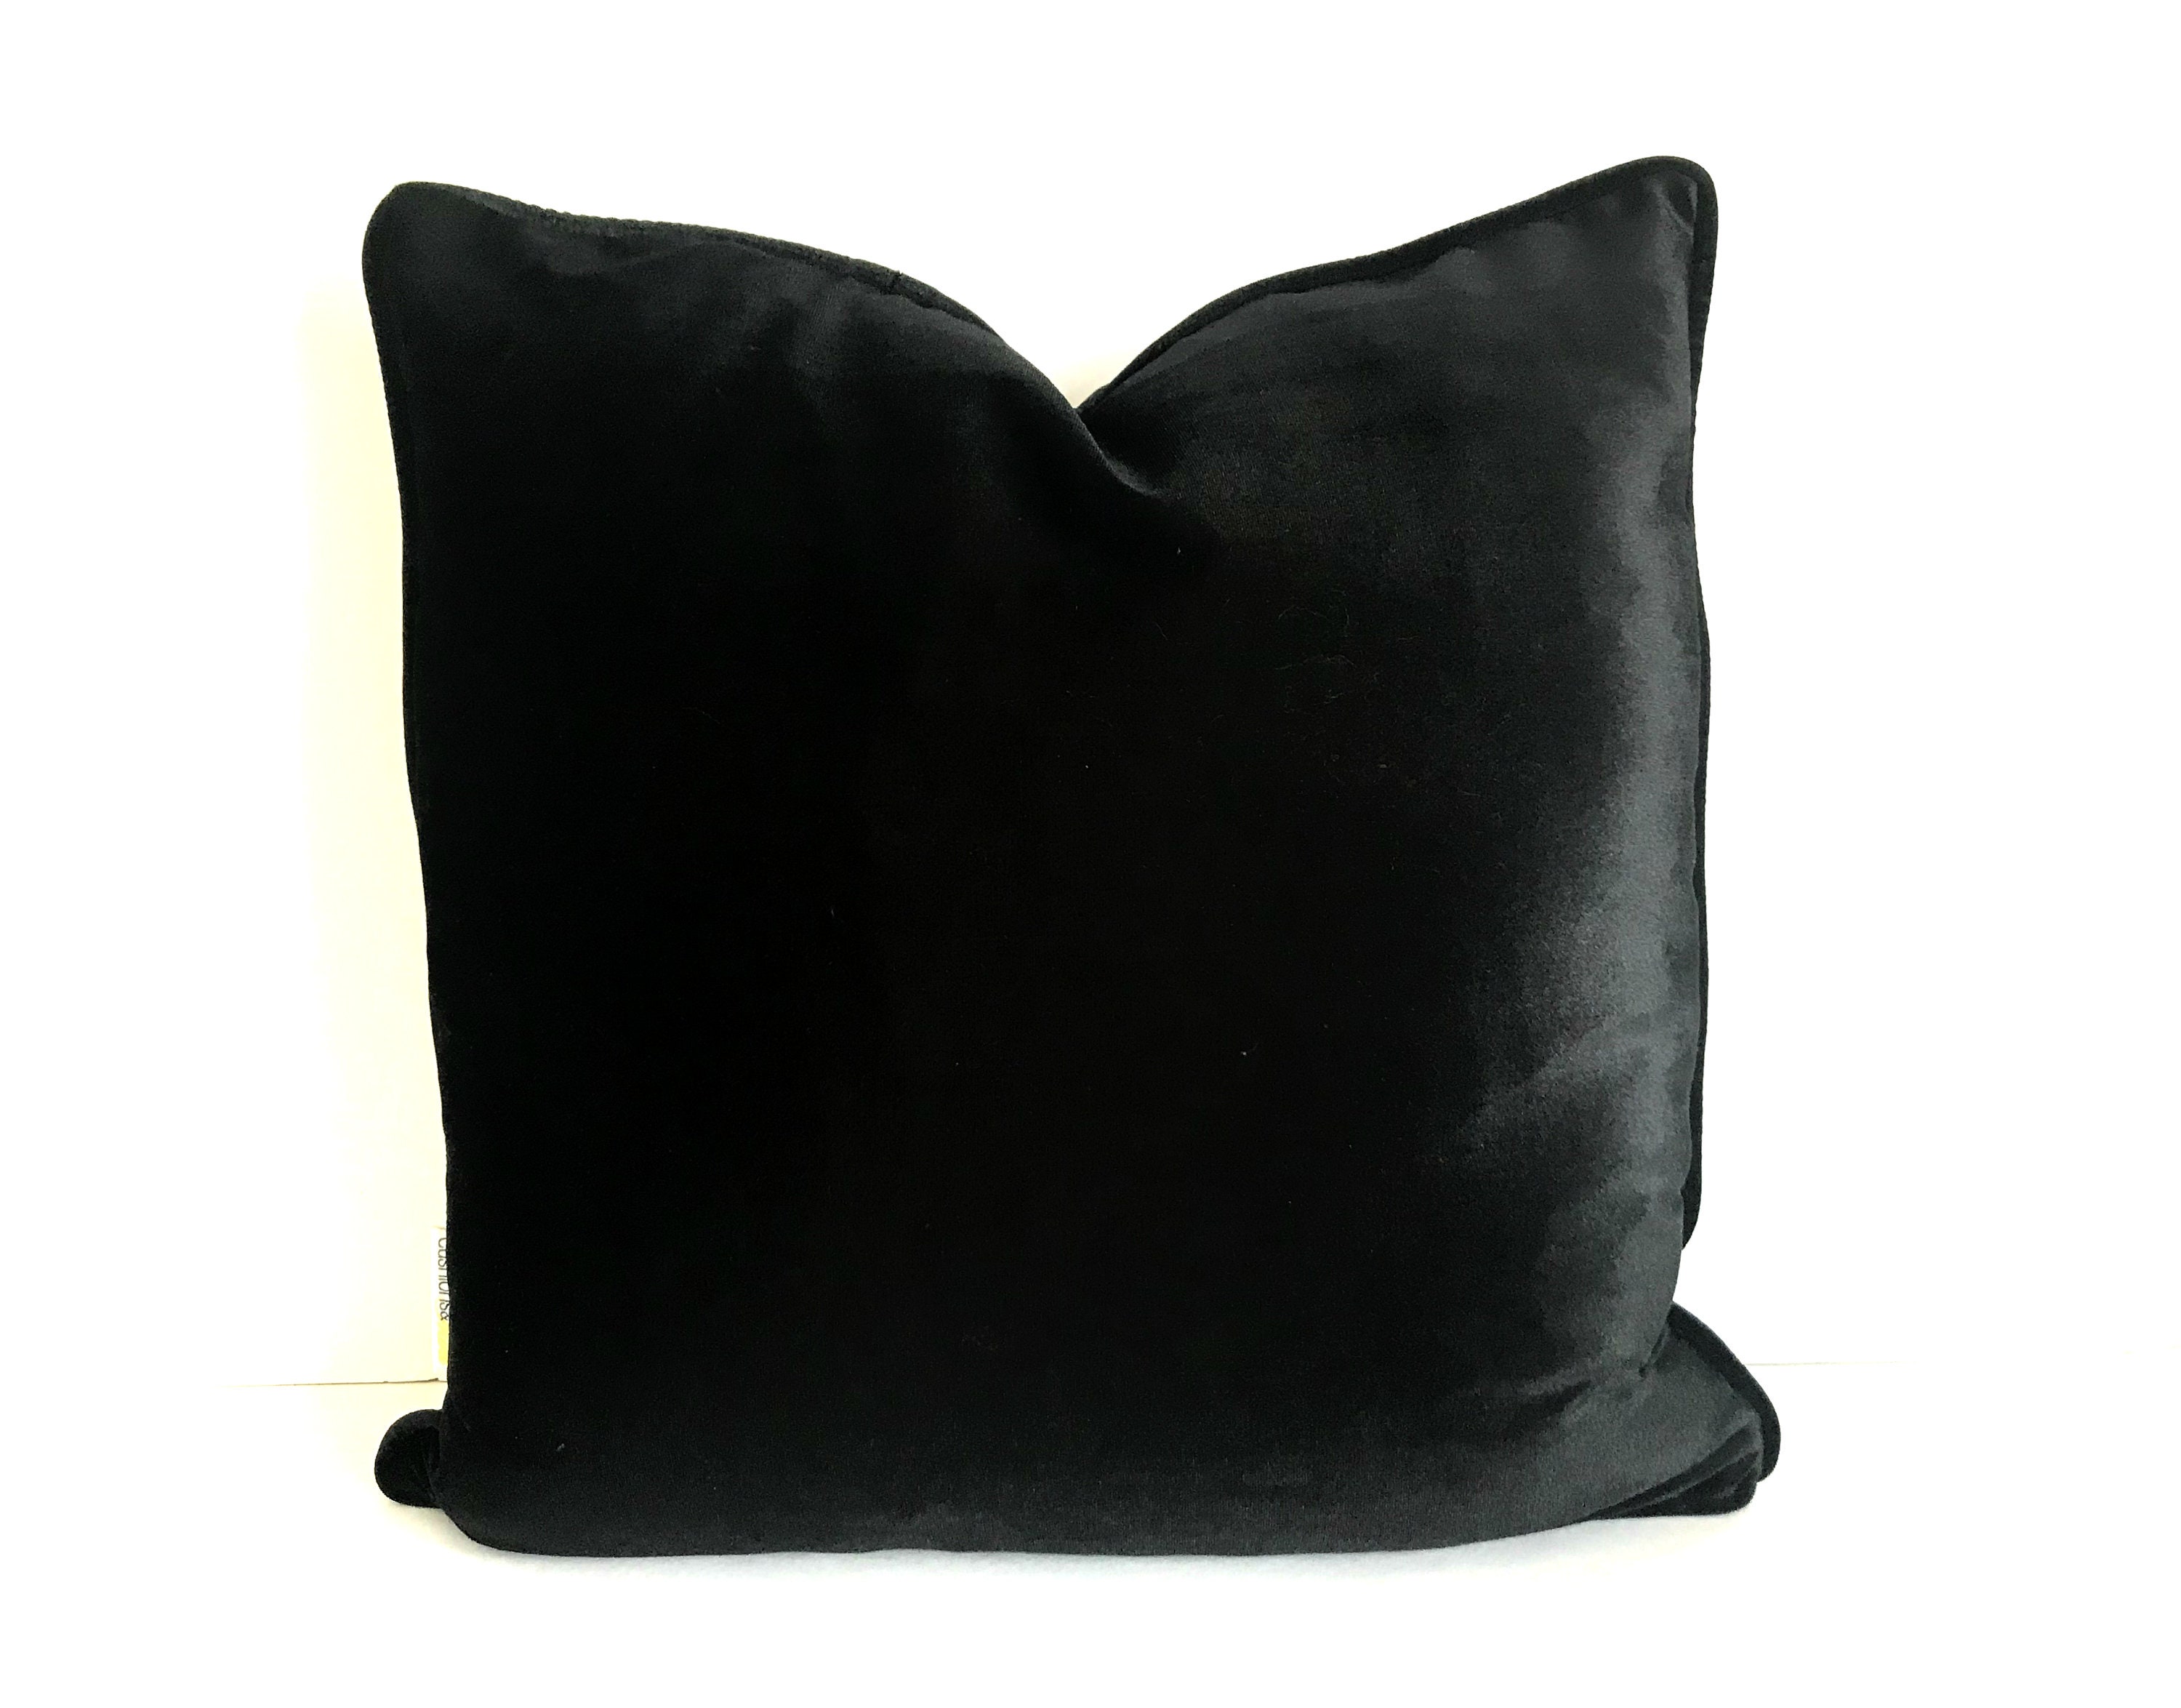 black velvet pillow covers